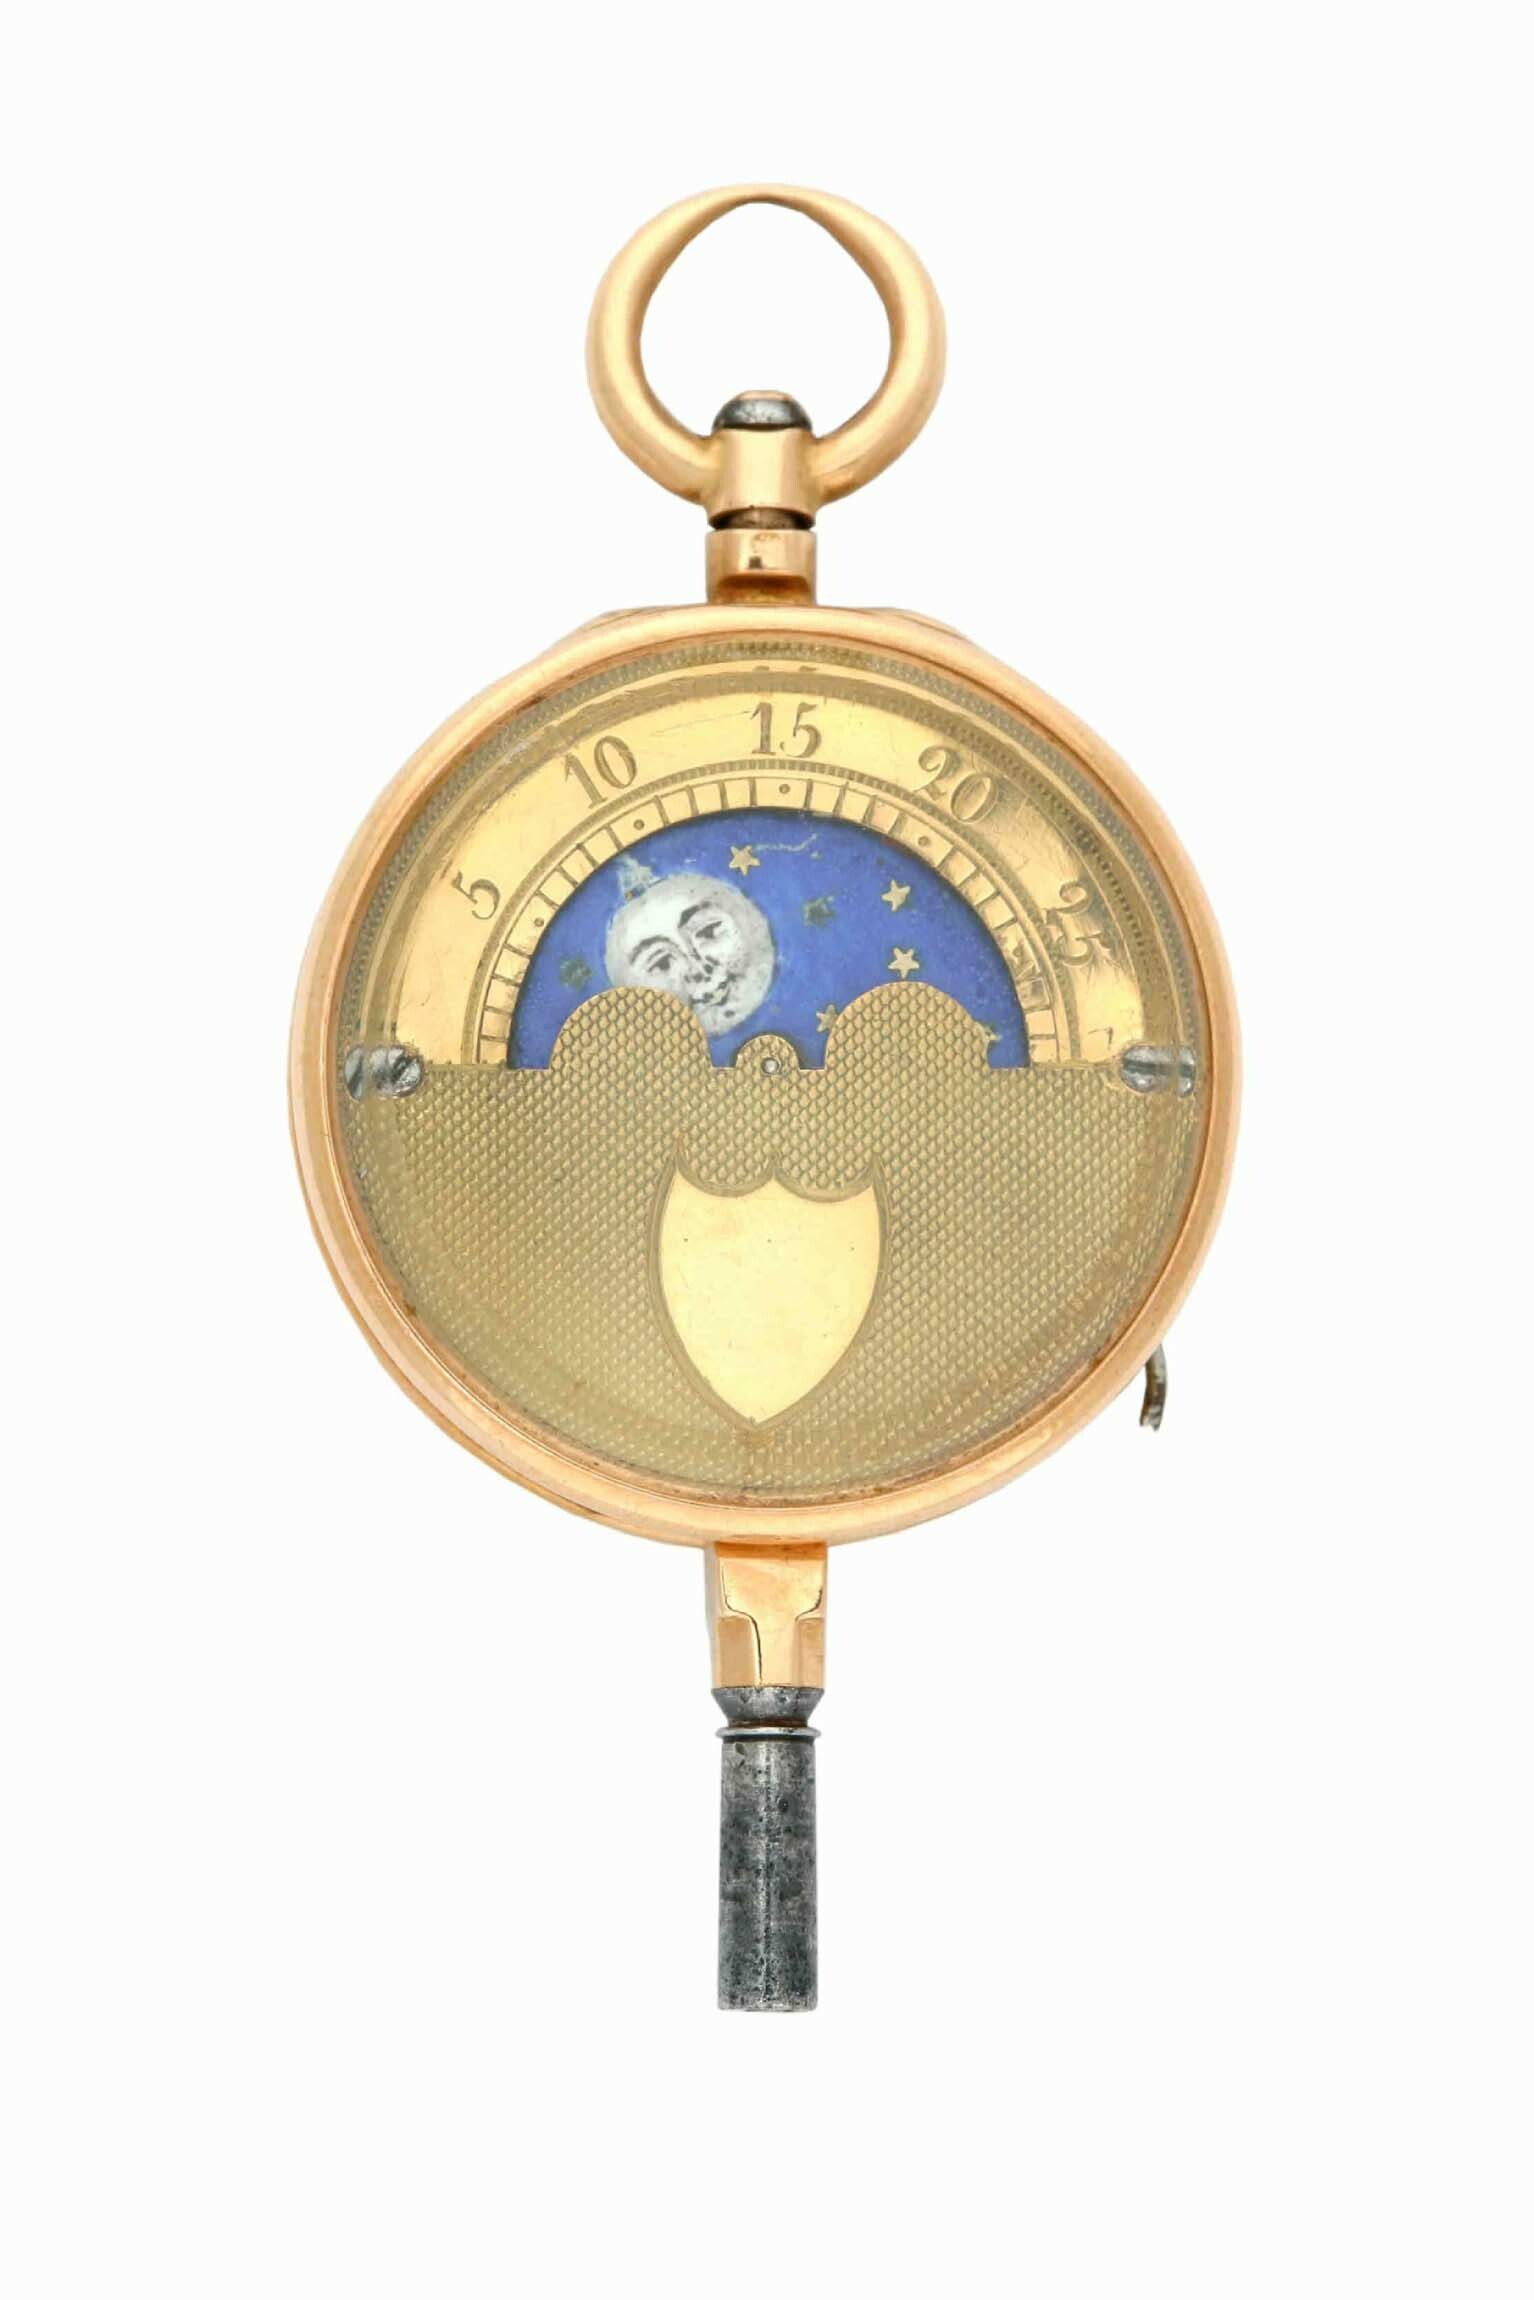 Schlüssel für Taschenuhr, Etienne Tavernier, Paris, um 1800 (Deutsches Uhrenmuseum CC BY-SA)